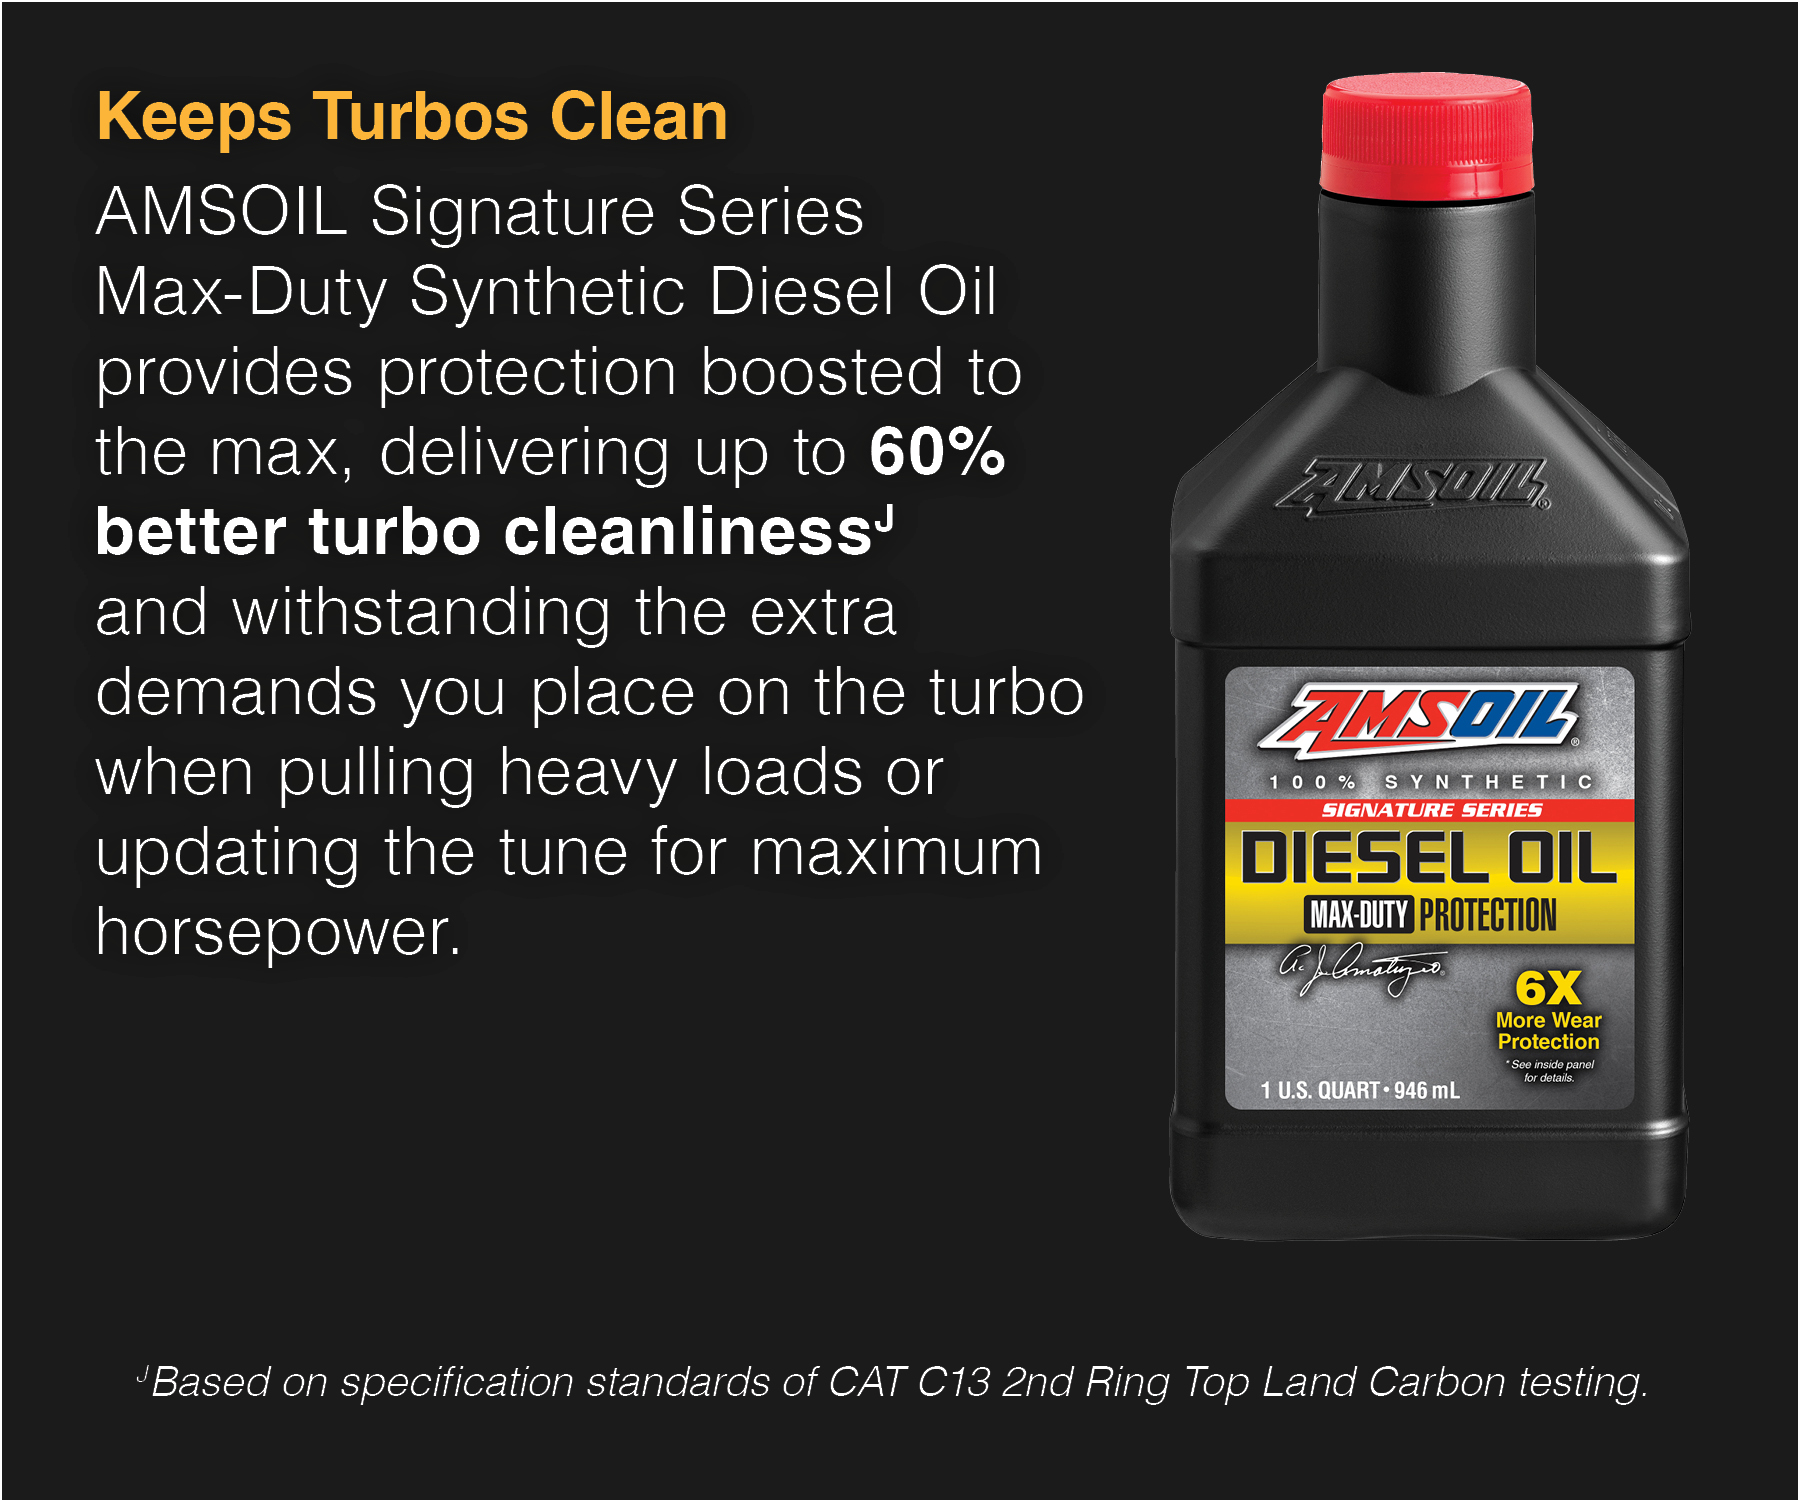 AMSOIL keeps turbo diesels cleaner.